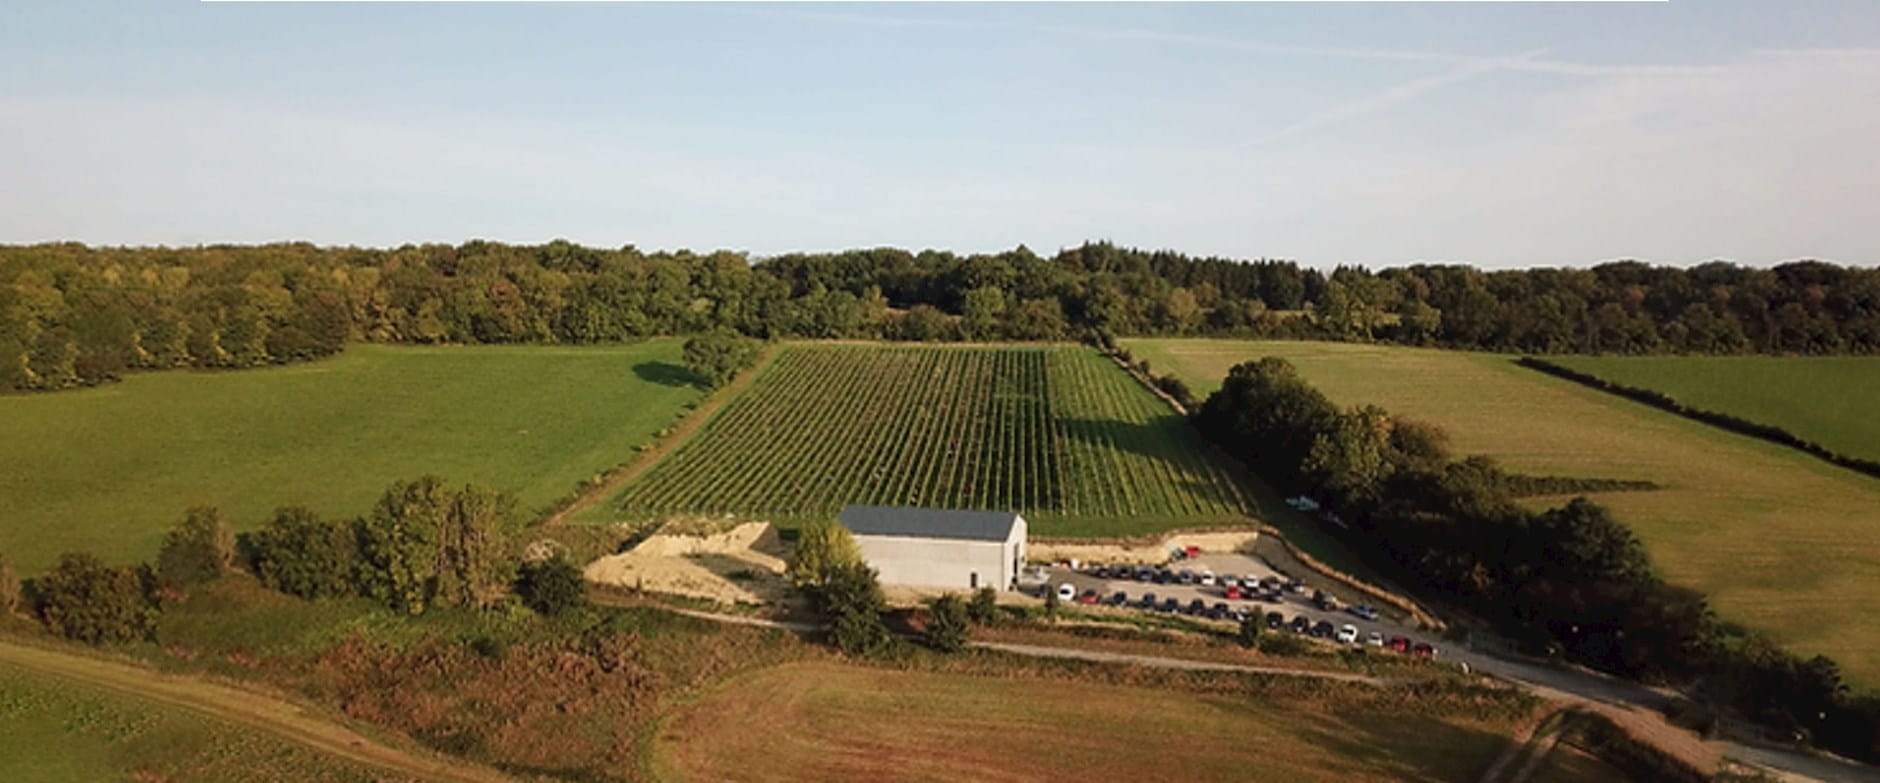 The Vin du Pays de Herve vineyard in east Belgium